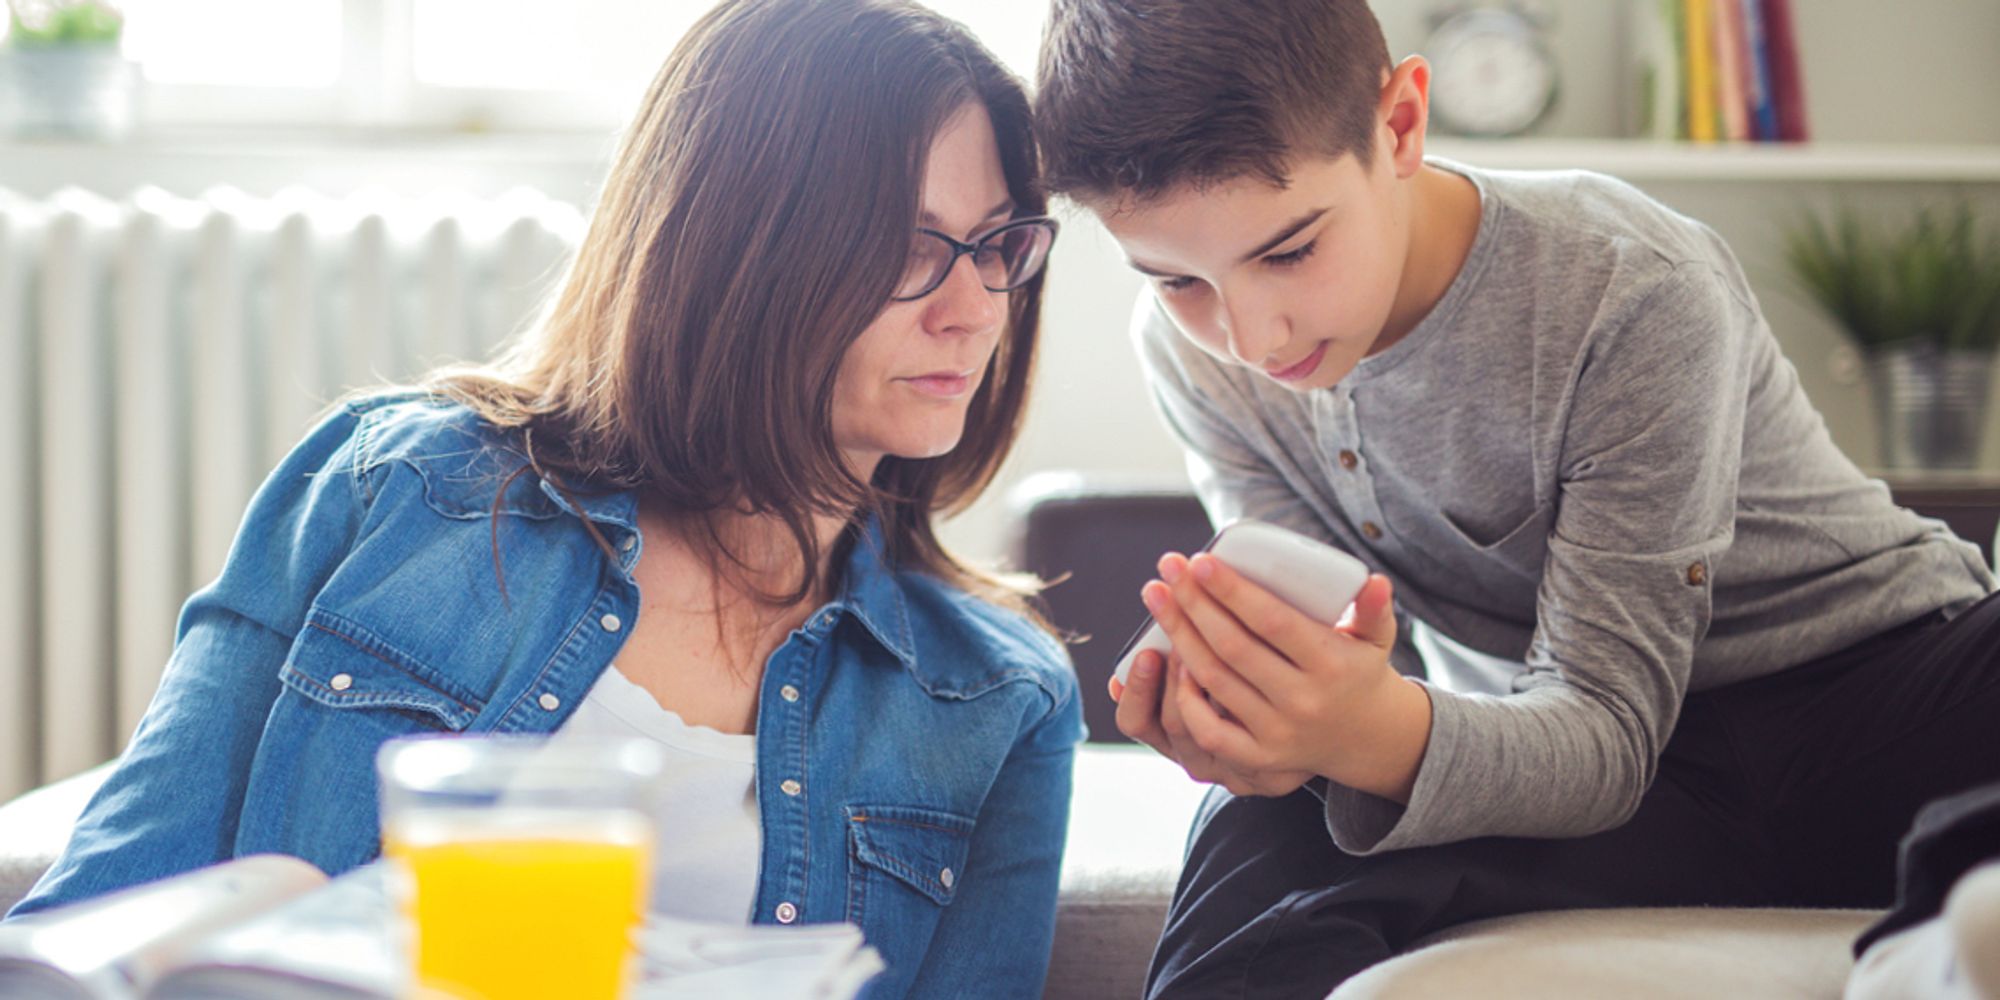 Parent-vs.-Gadget Grudgematch: Can Tech Raise Your Kids Better Than You?